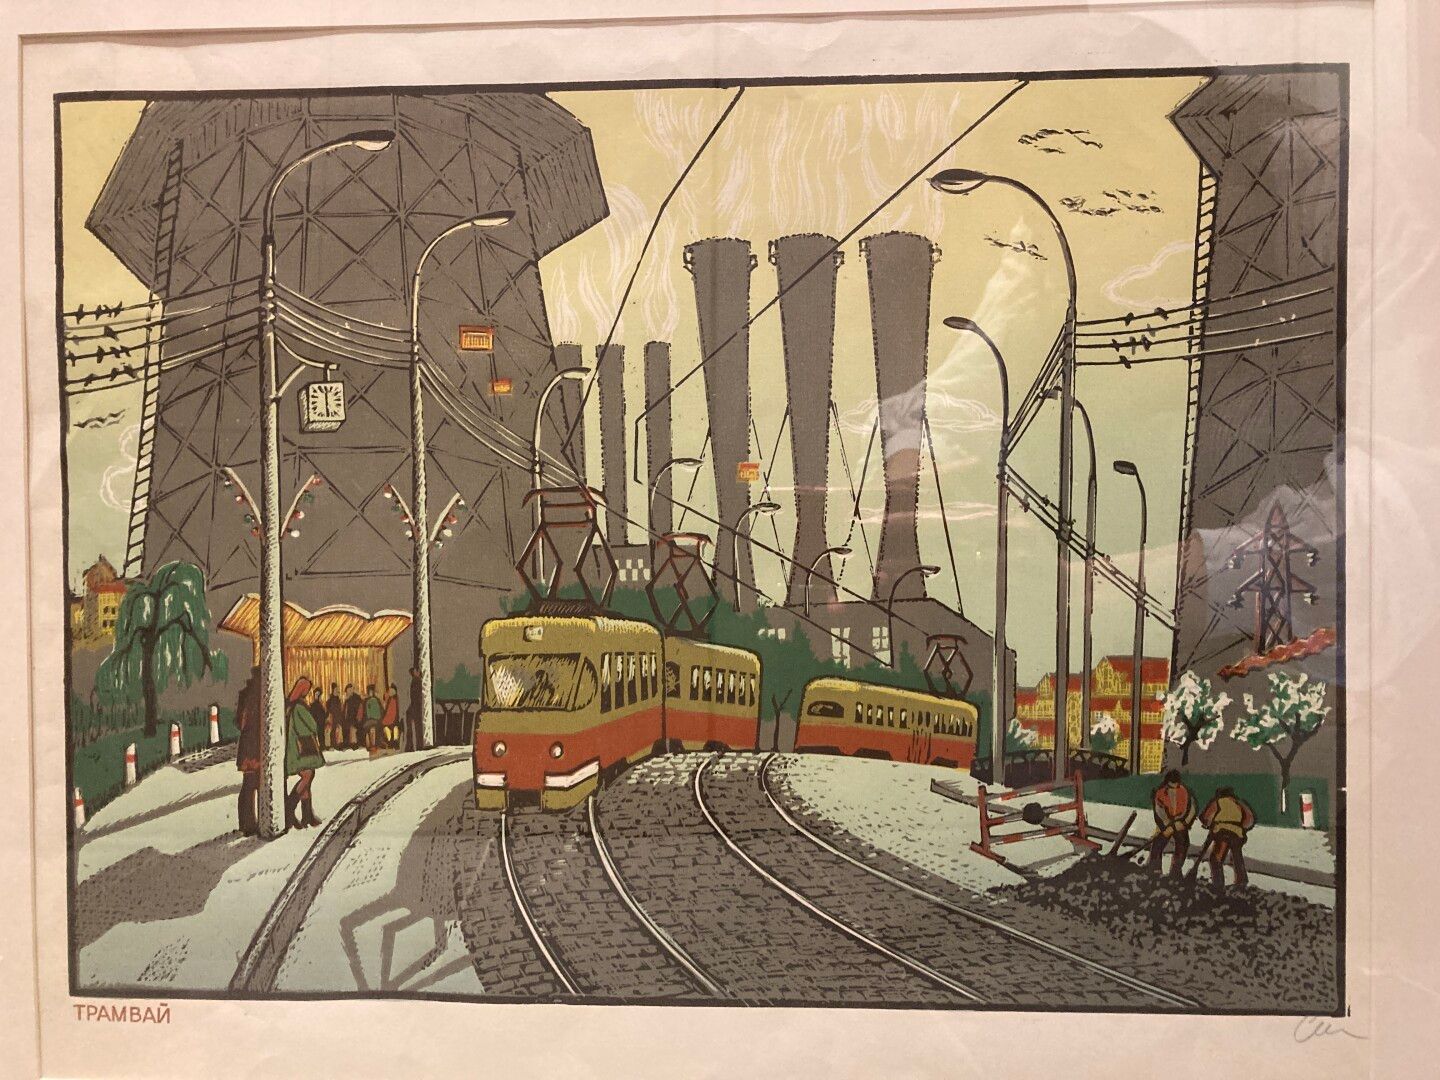 Null 孤独的人

桁架式电车（TPAMBAN

右下角有签名的石版画

39 x 48,5 cm